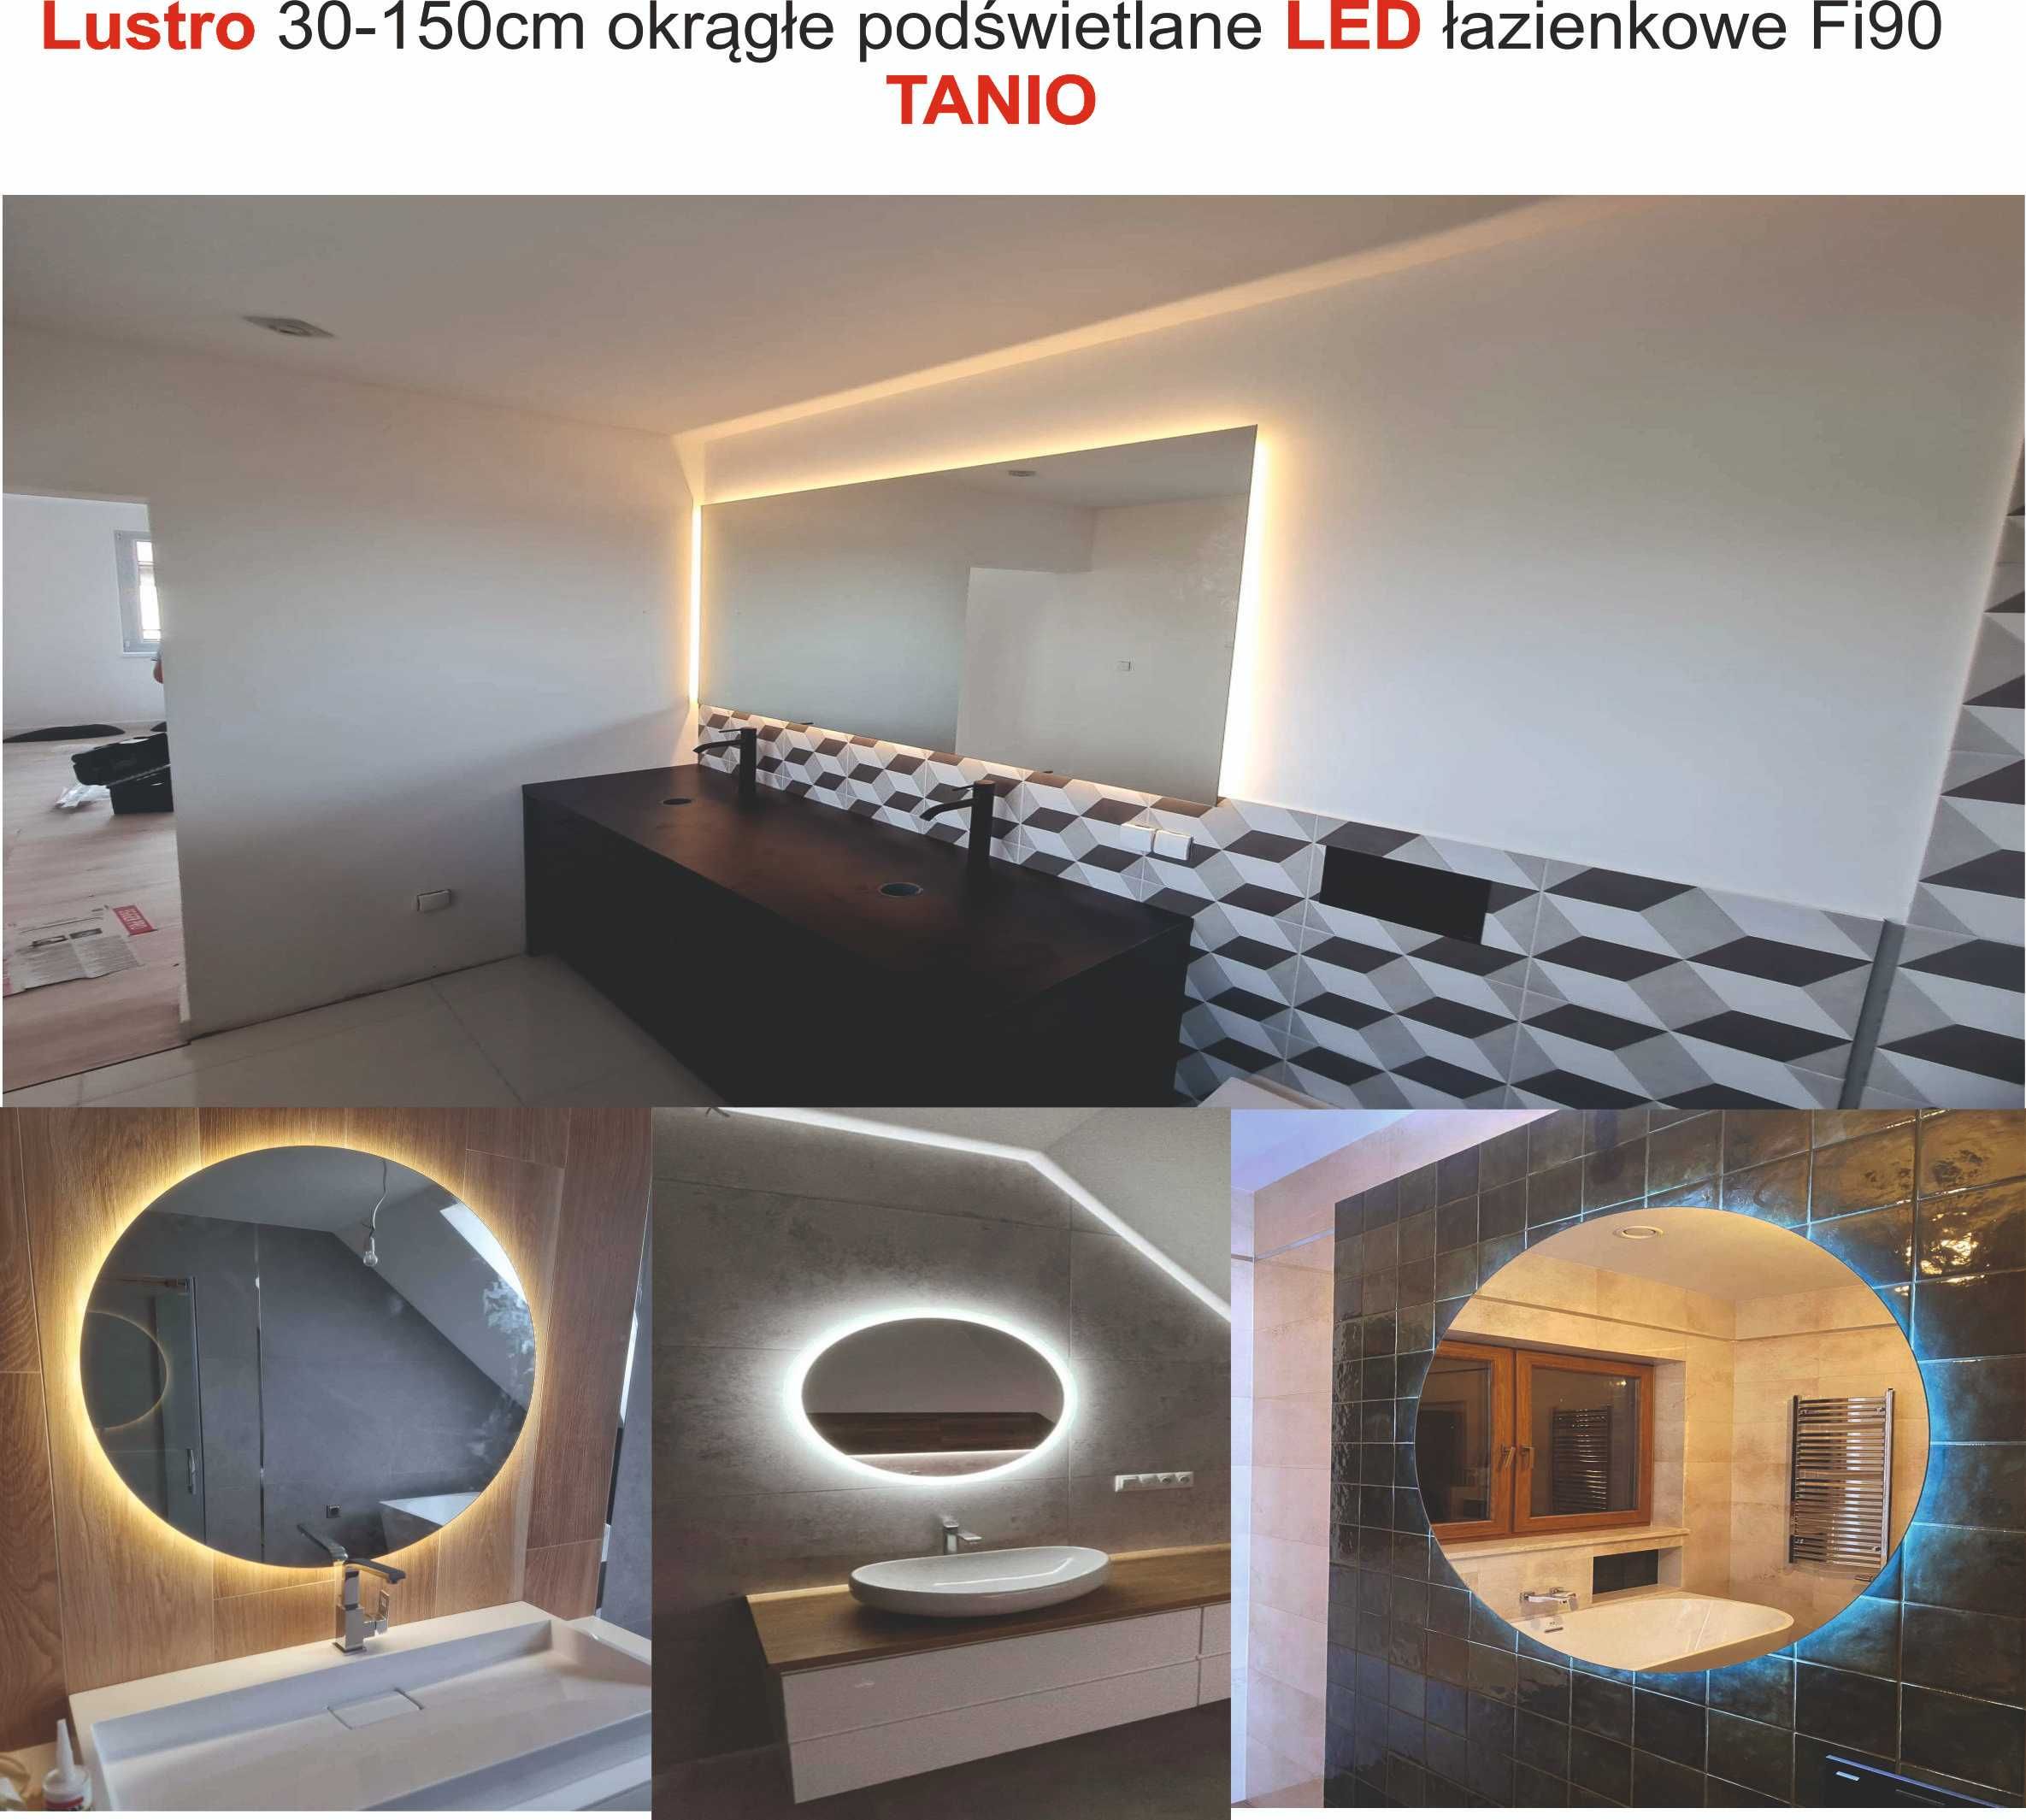 Lustro 30-160 cm okrągłe podświetlane LED łazienkowe Fi150cm